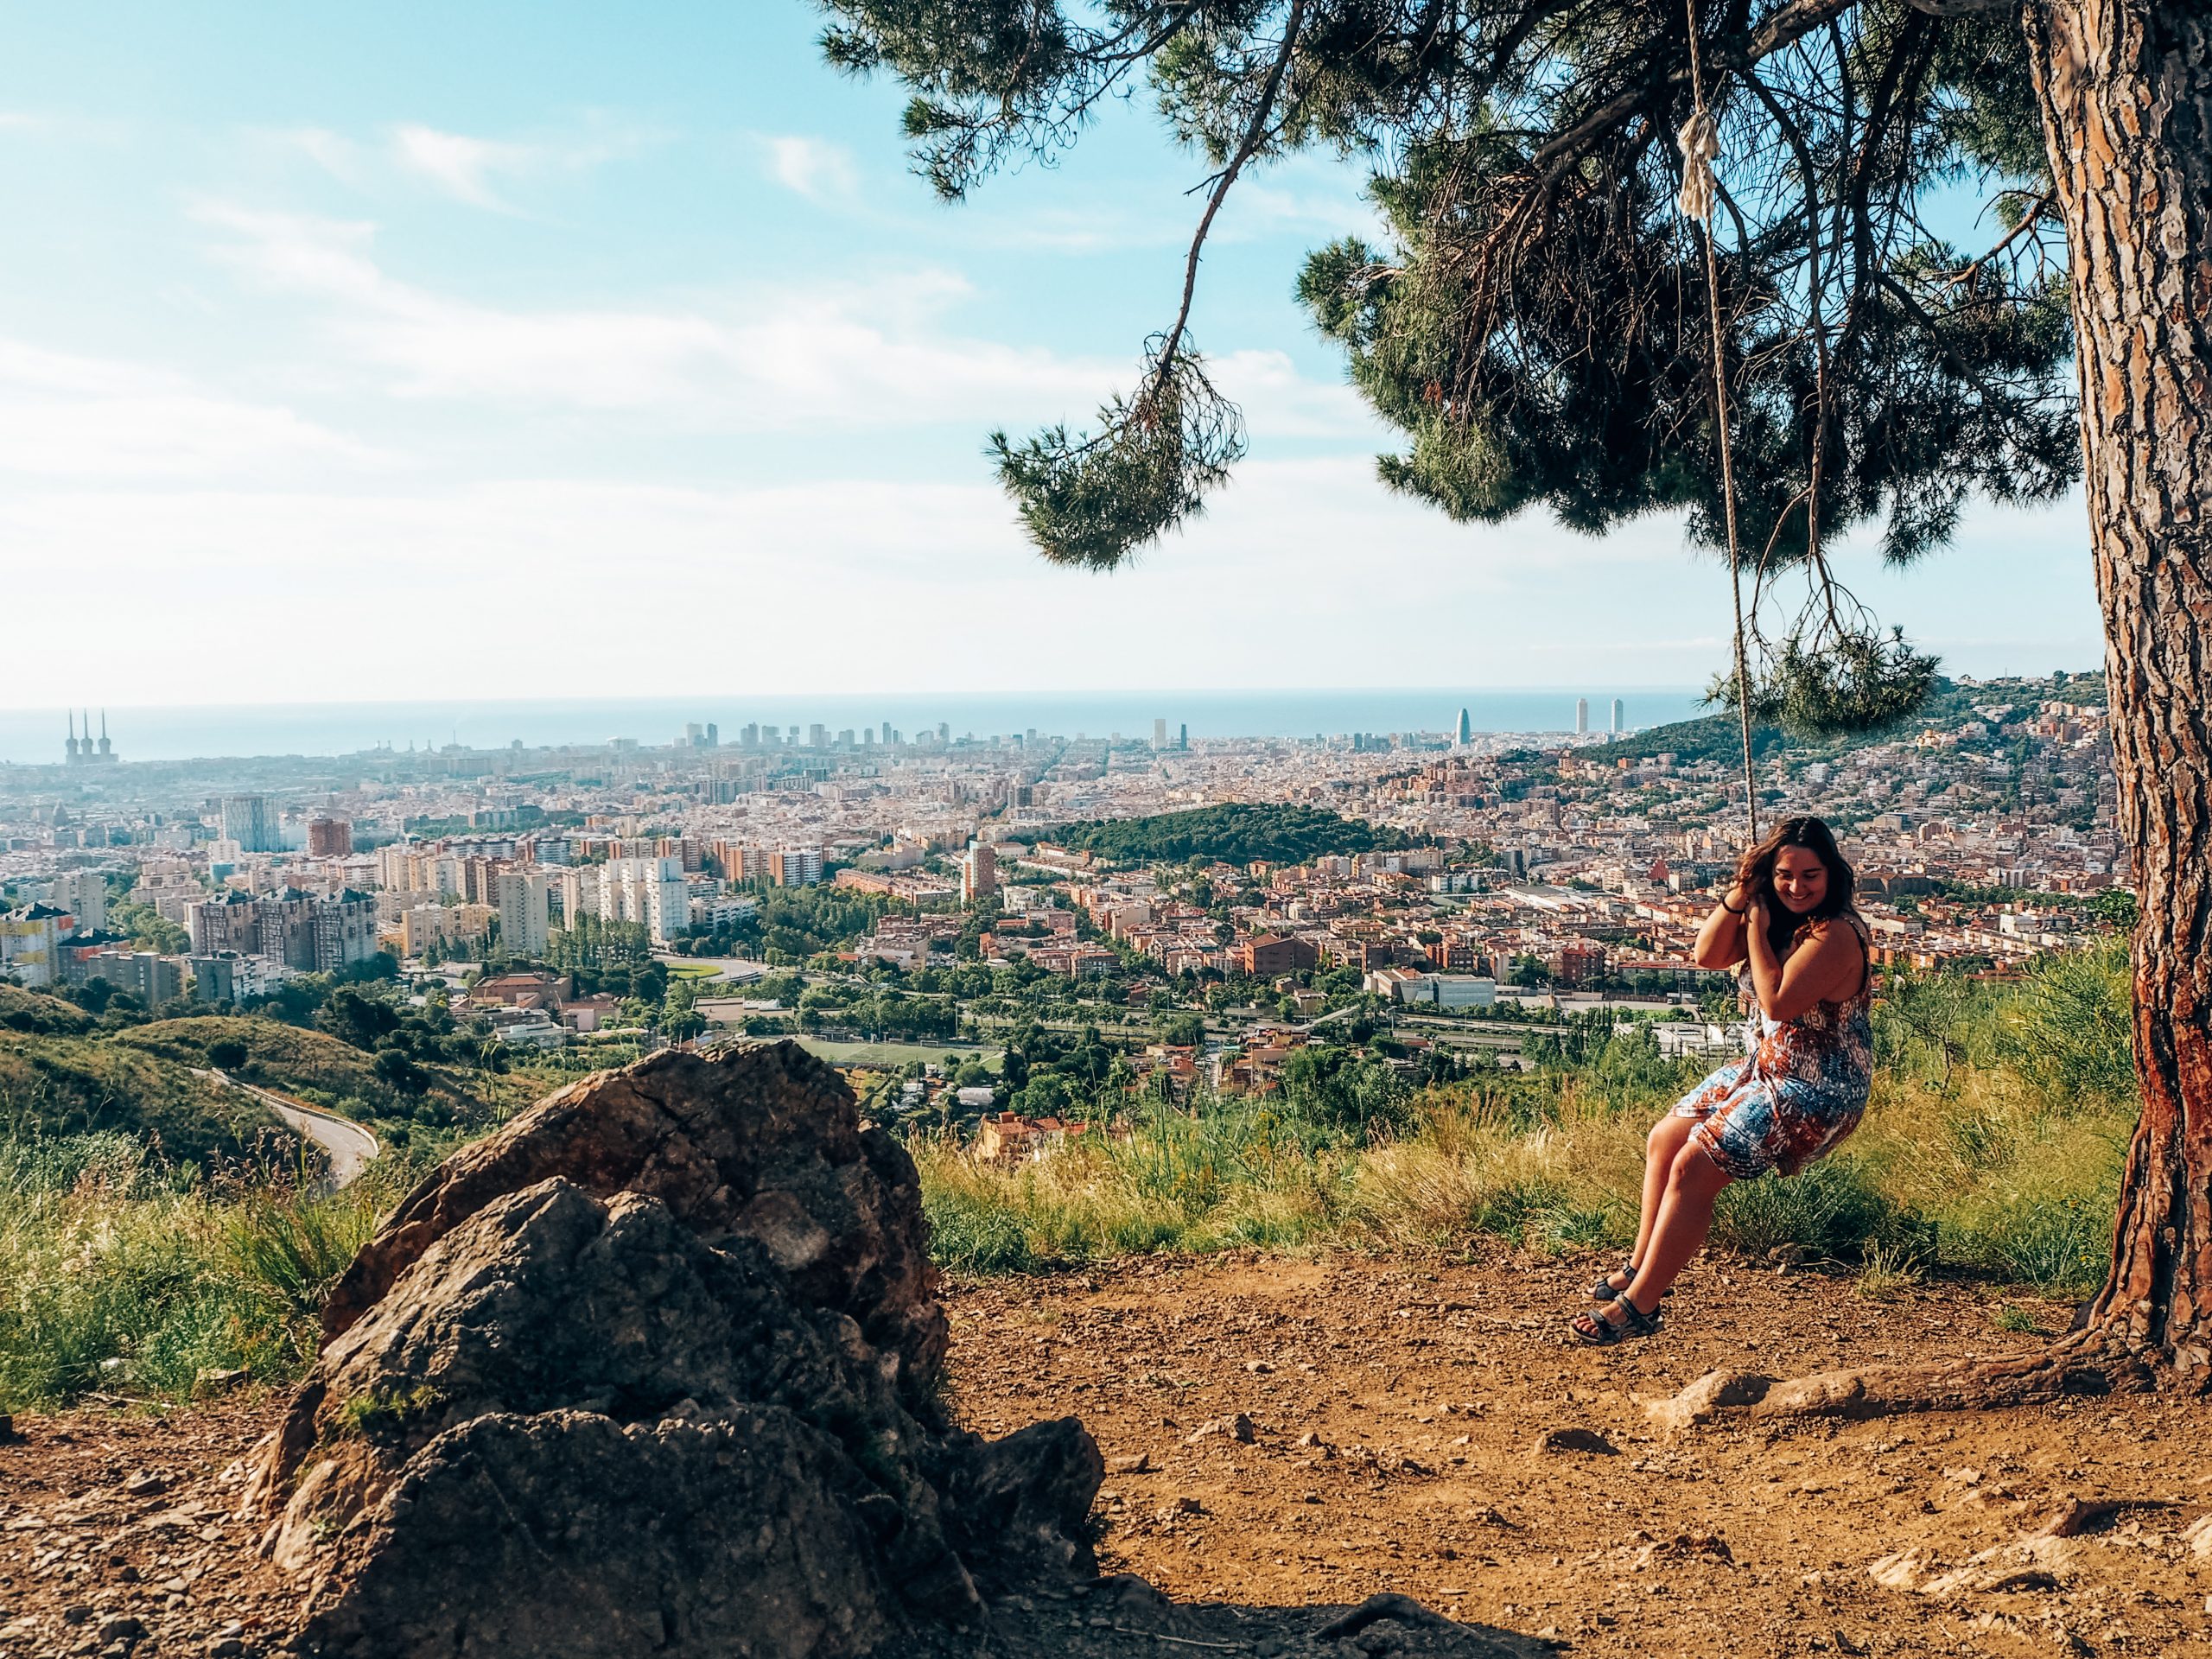 Mirador del Columpio, uno de los miradores más famosos de Barcelona